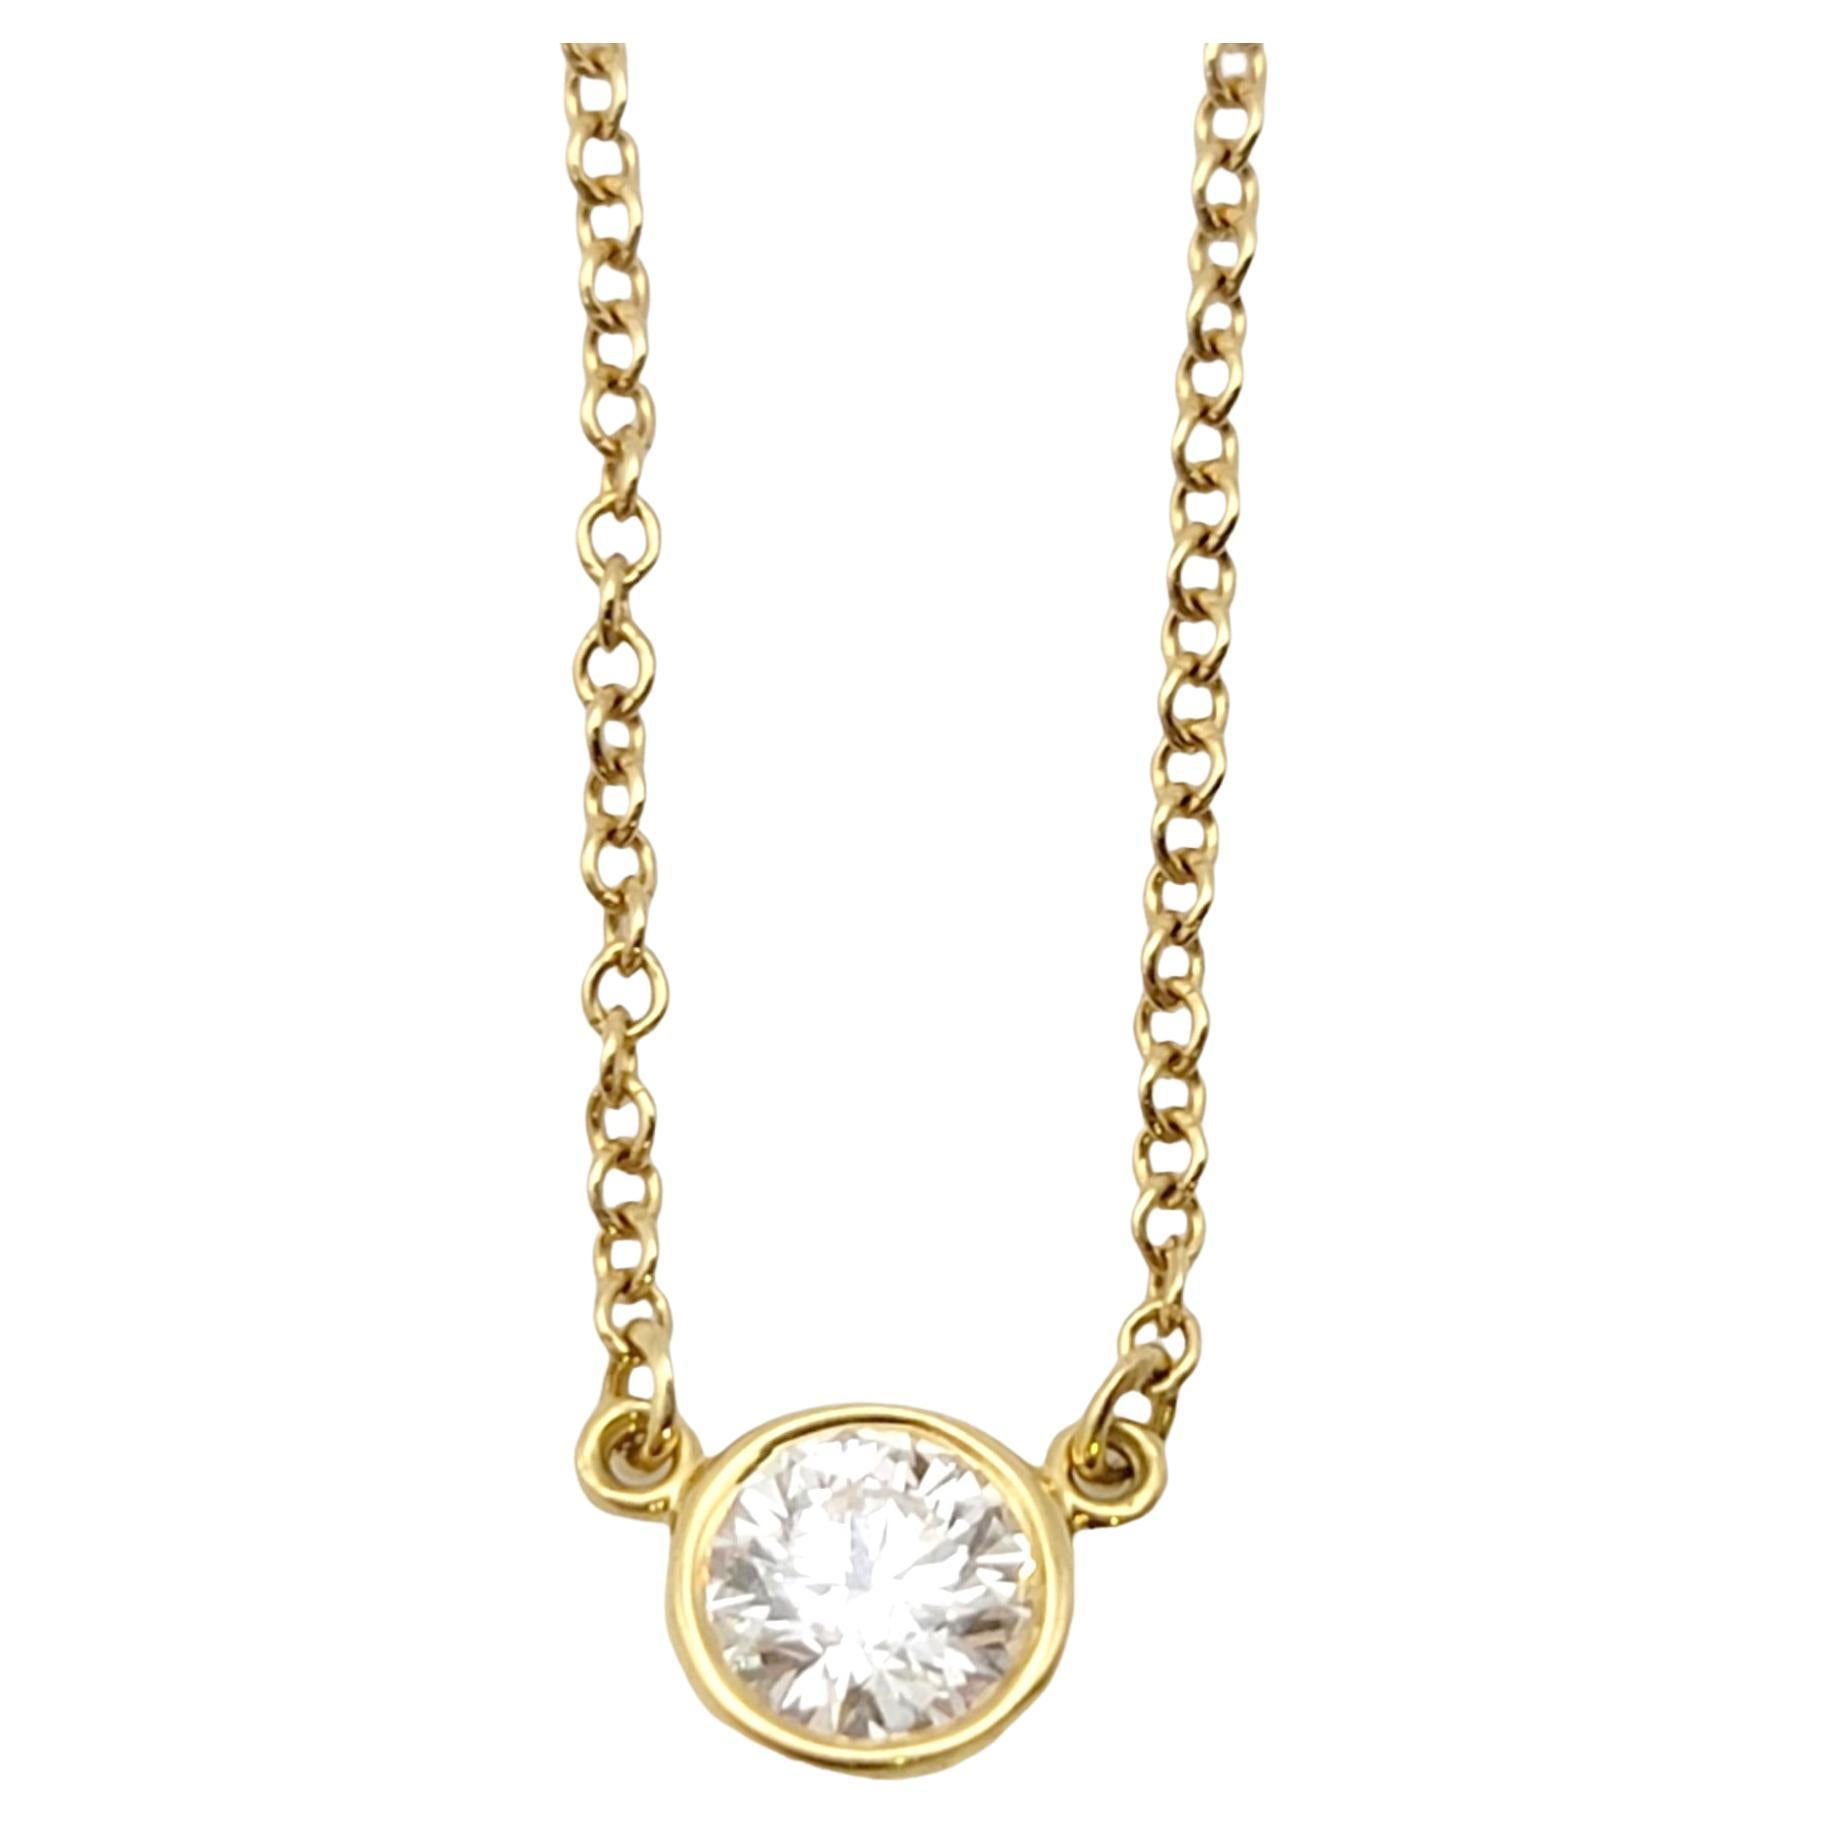 Tiffany & Co. Elsa Peretti Diamonds by the Yard Solitaire Pendant Necklace F/VS1